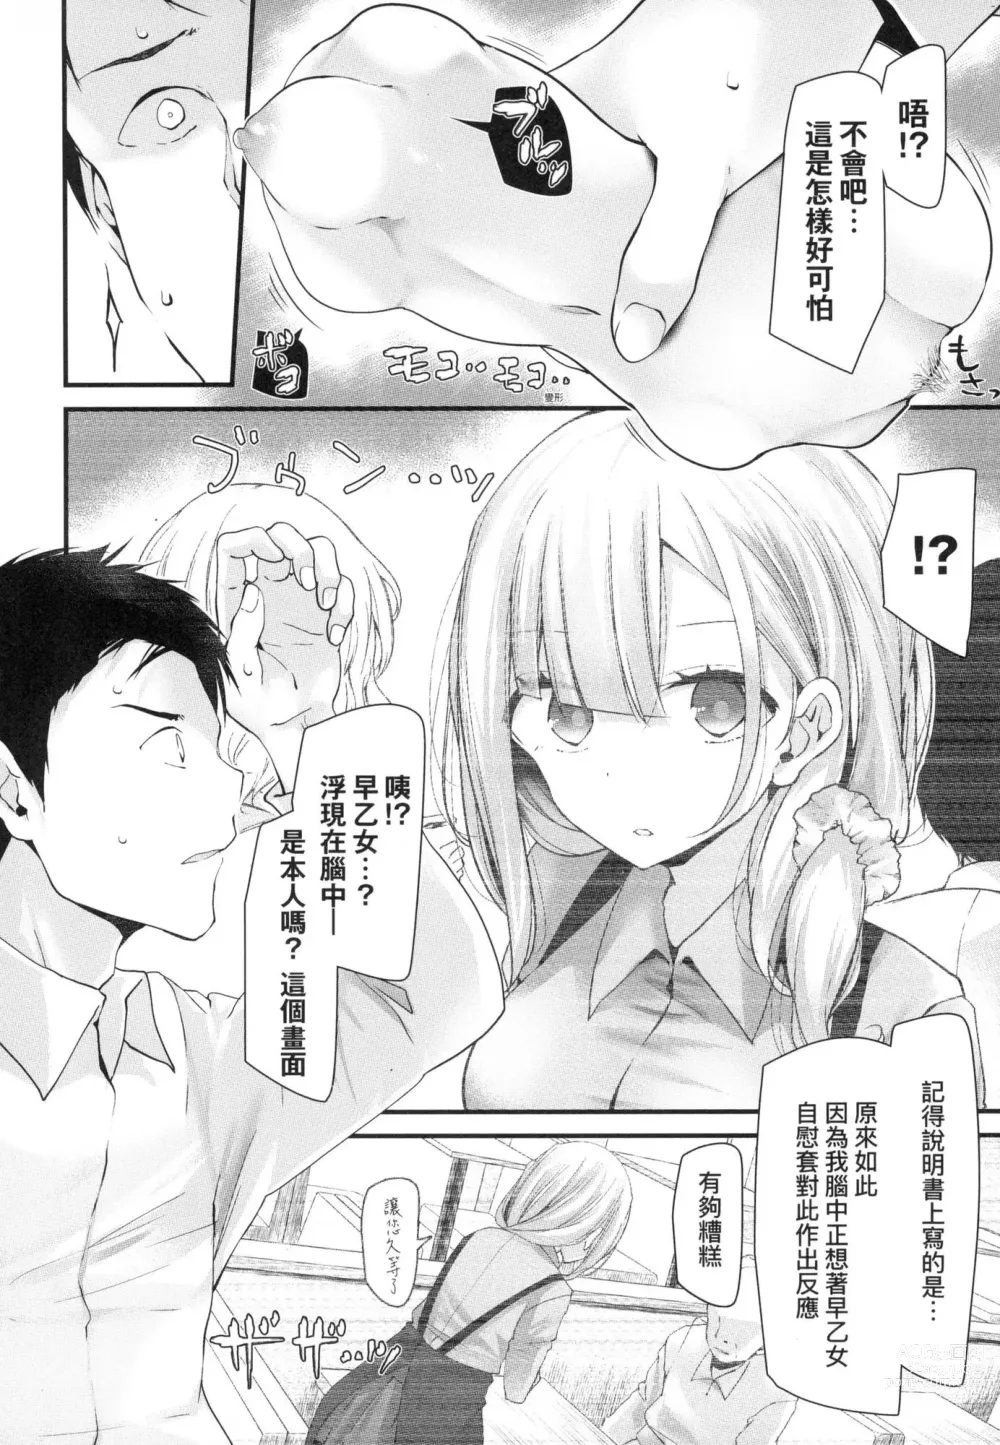 Page 20 of manga 自慰套教室-新學期- 女學生播種懲罰計畫 (decensored)